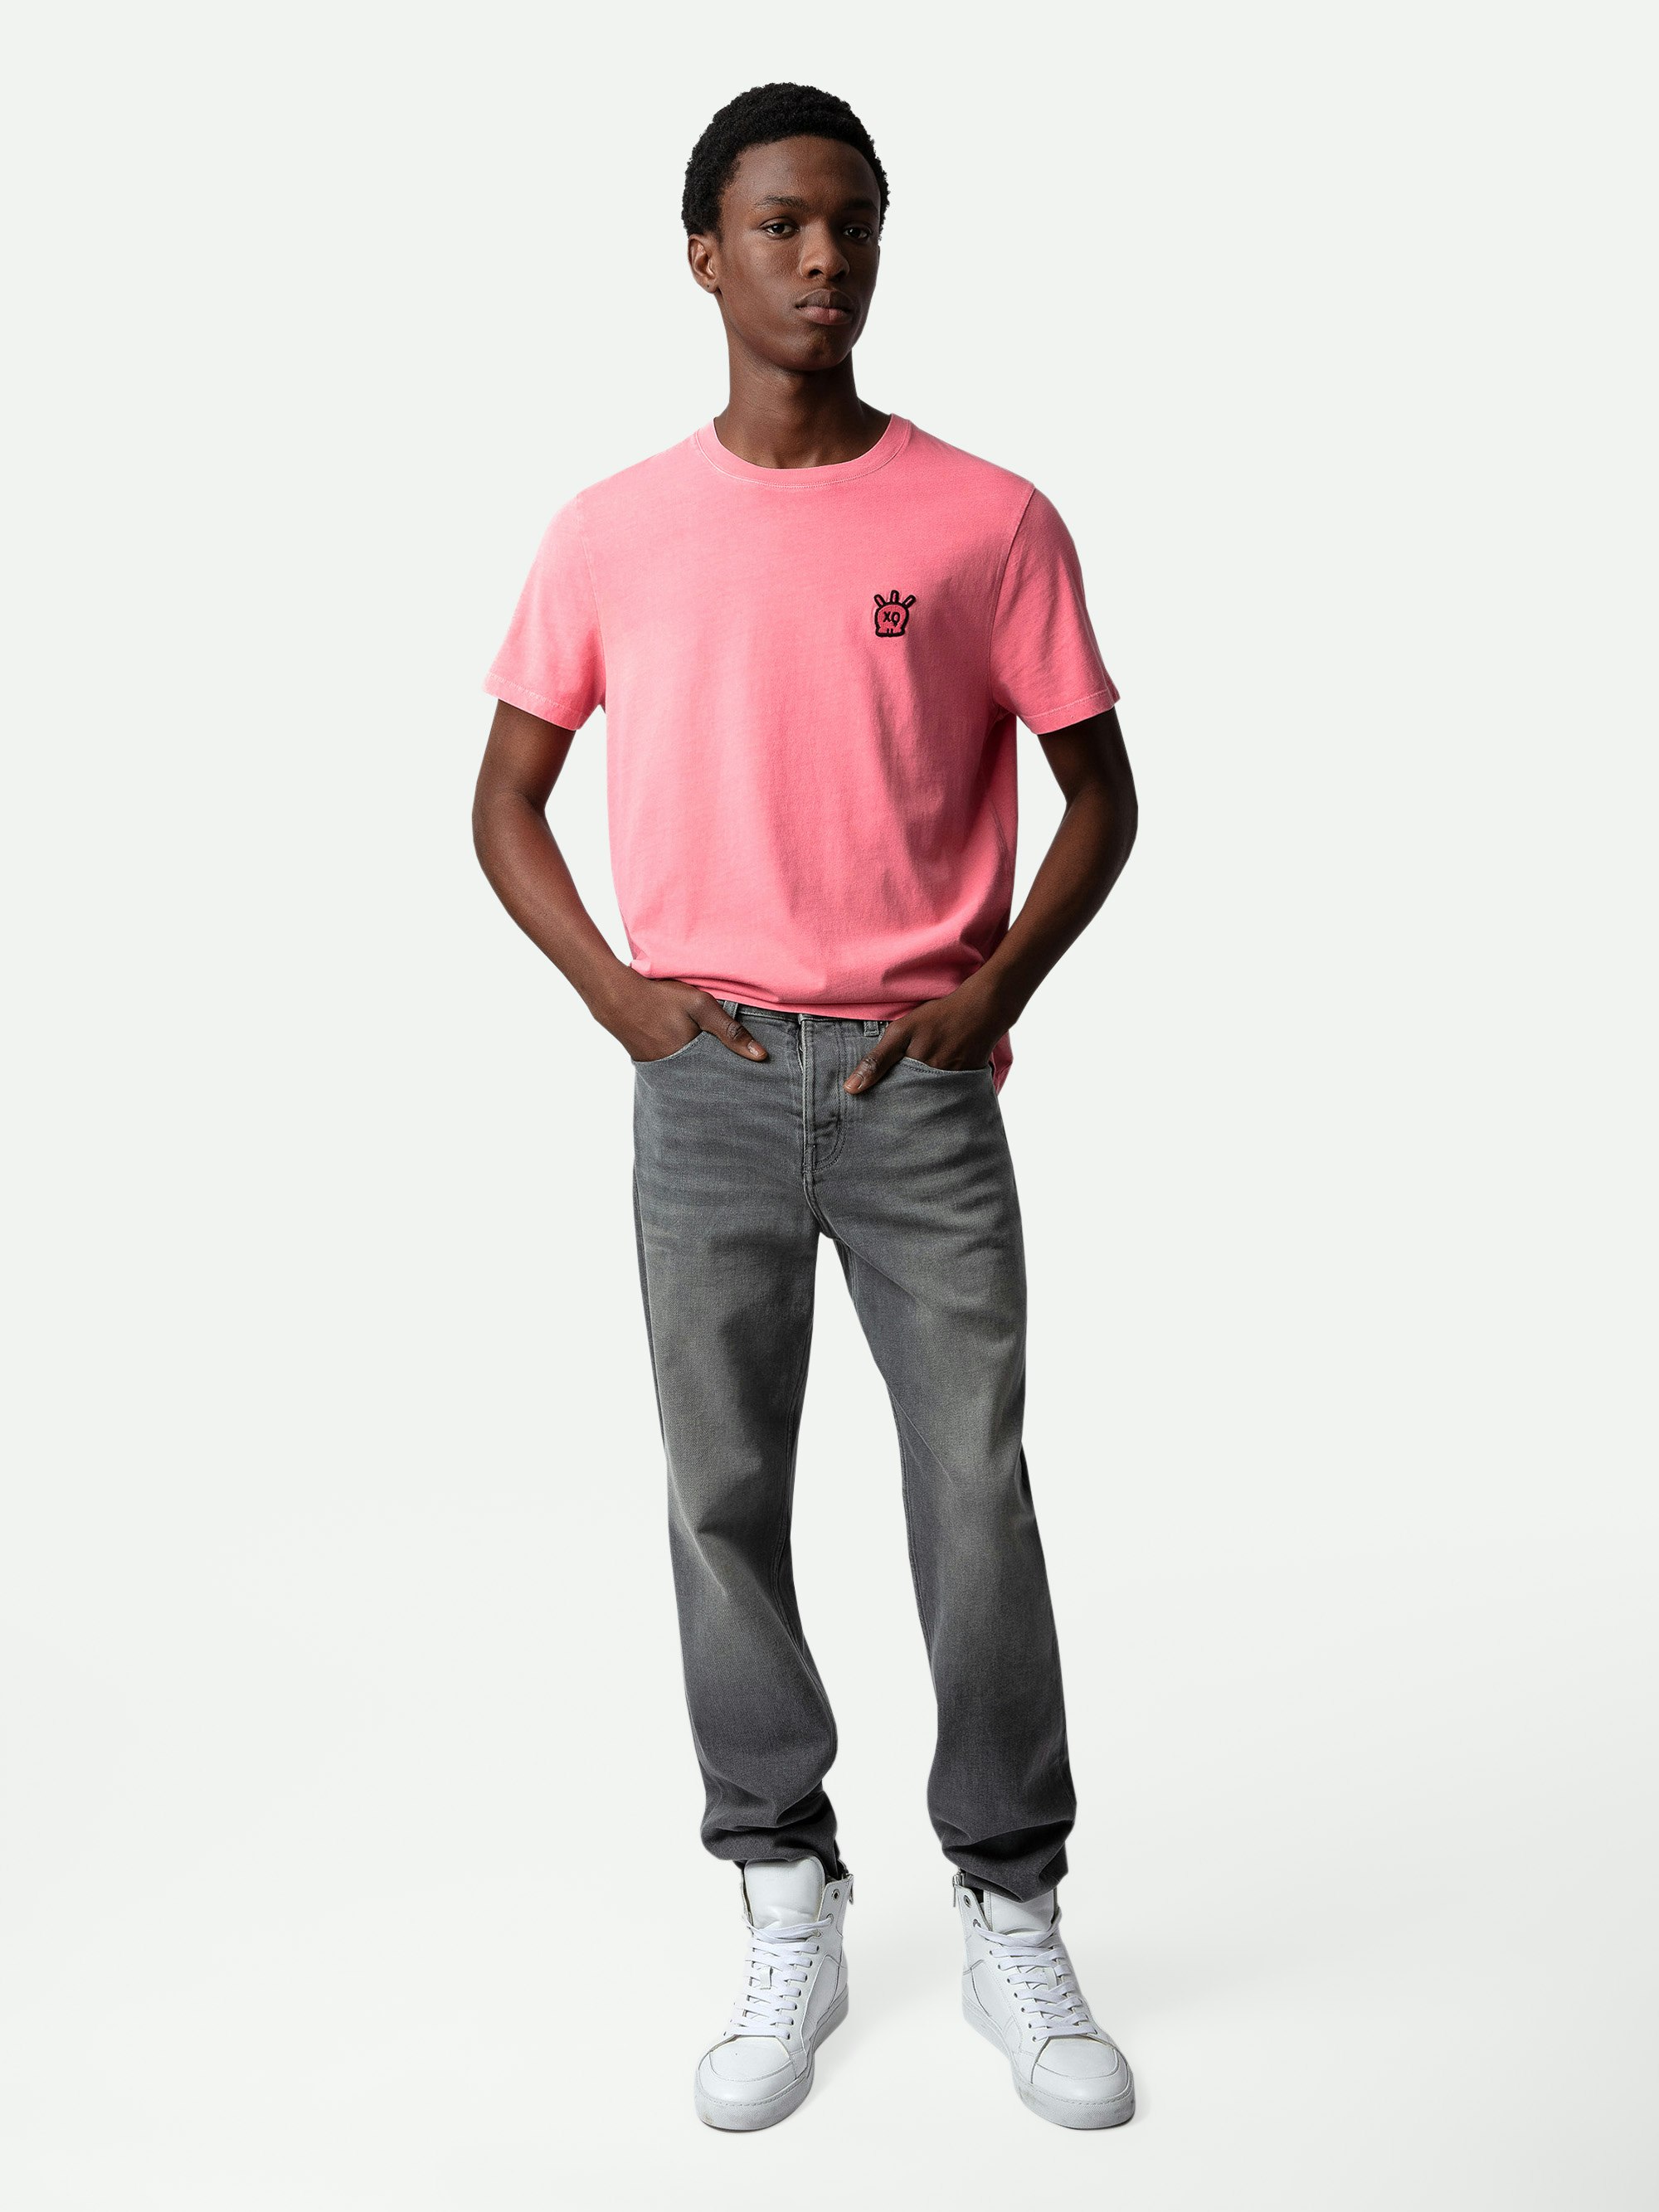 T-shirt Tommy Skull XO - T-shirt in cotone rosa girocollo con maniche corte e toppa Skull XO.